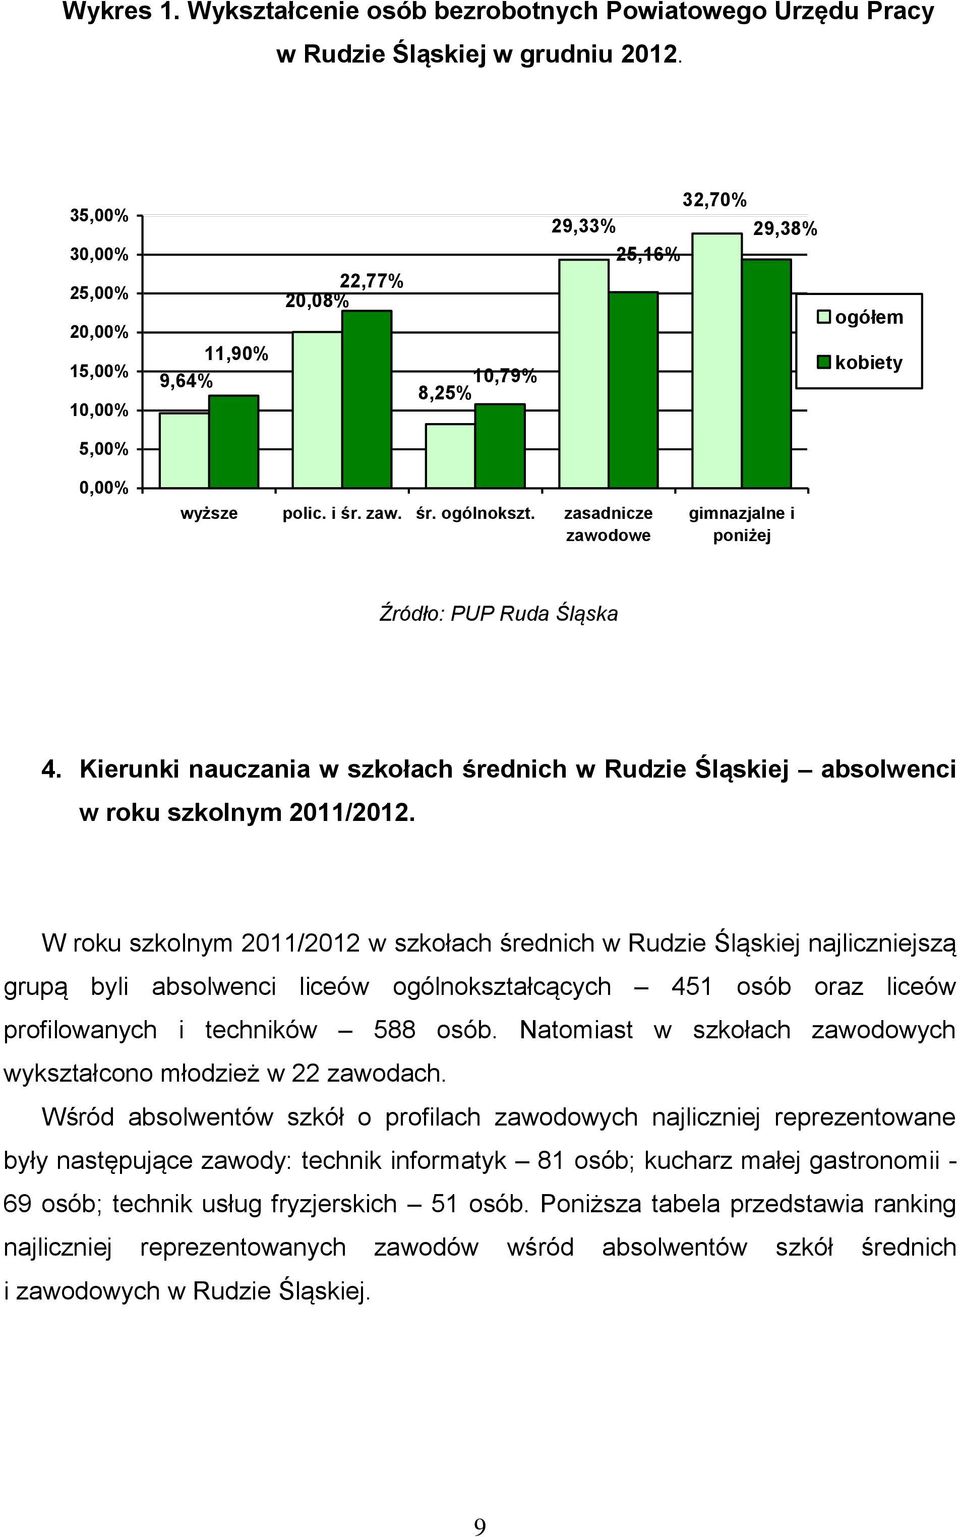 zasadnicze zawodowe gimnazjalne i poniżej Źródło: PUP Ruda Śląska 4. Kierunki nauczania w szkołach średnich w Rudzie Śląskiej absolwenci w roku szkolnym 2011/2012.